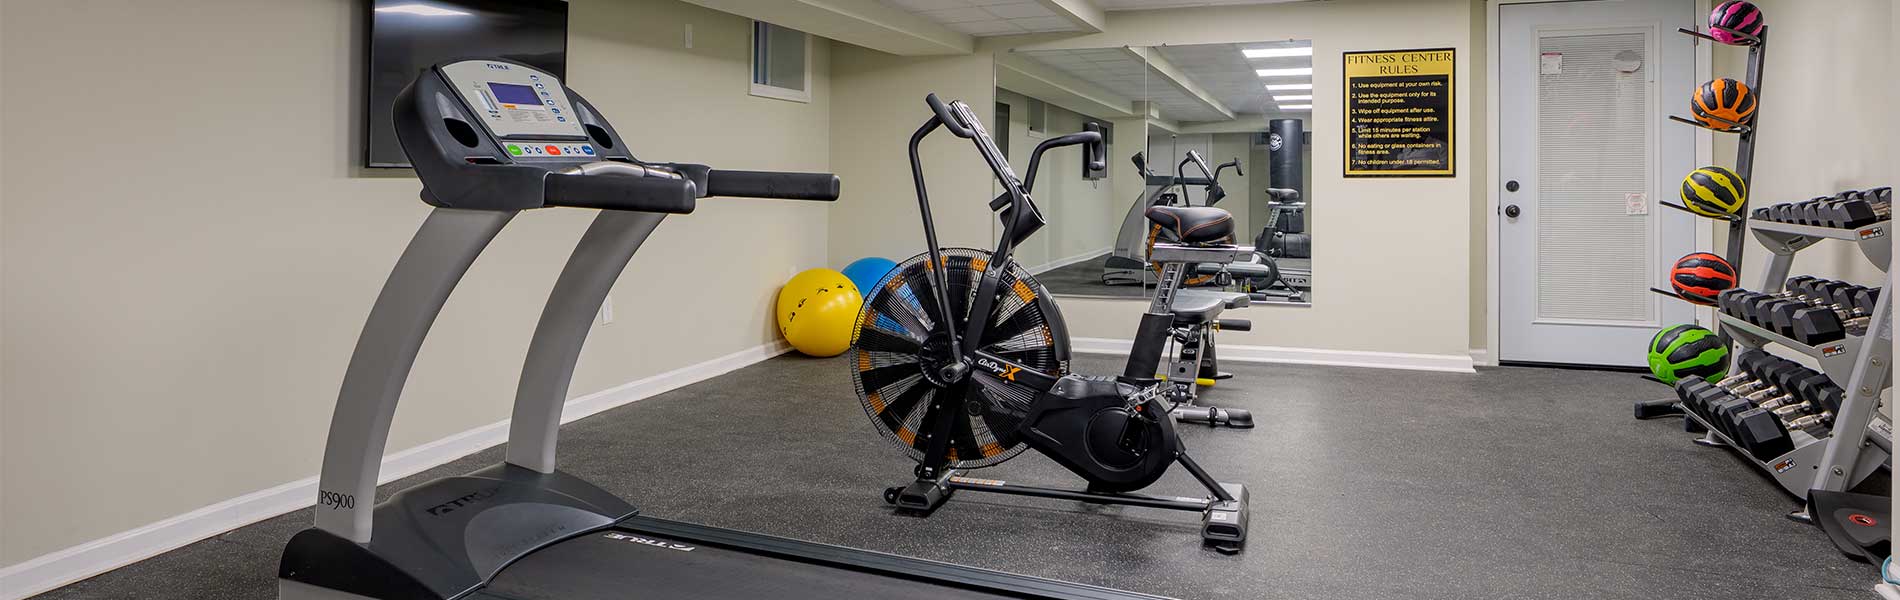 Treadmill Gym Equipment in Montclair Gardens